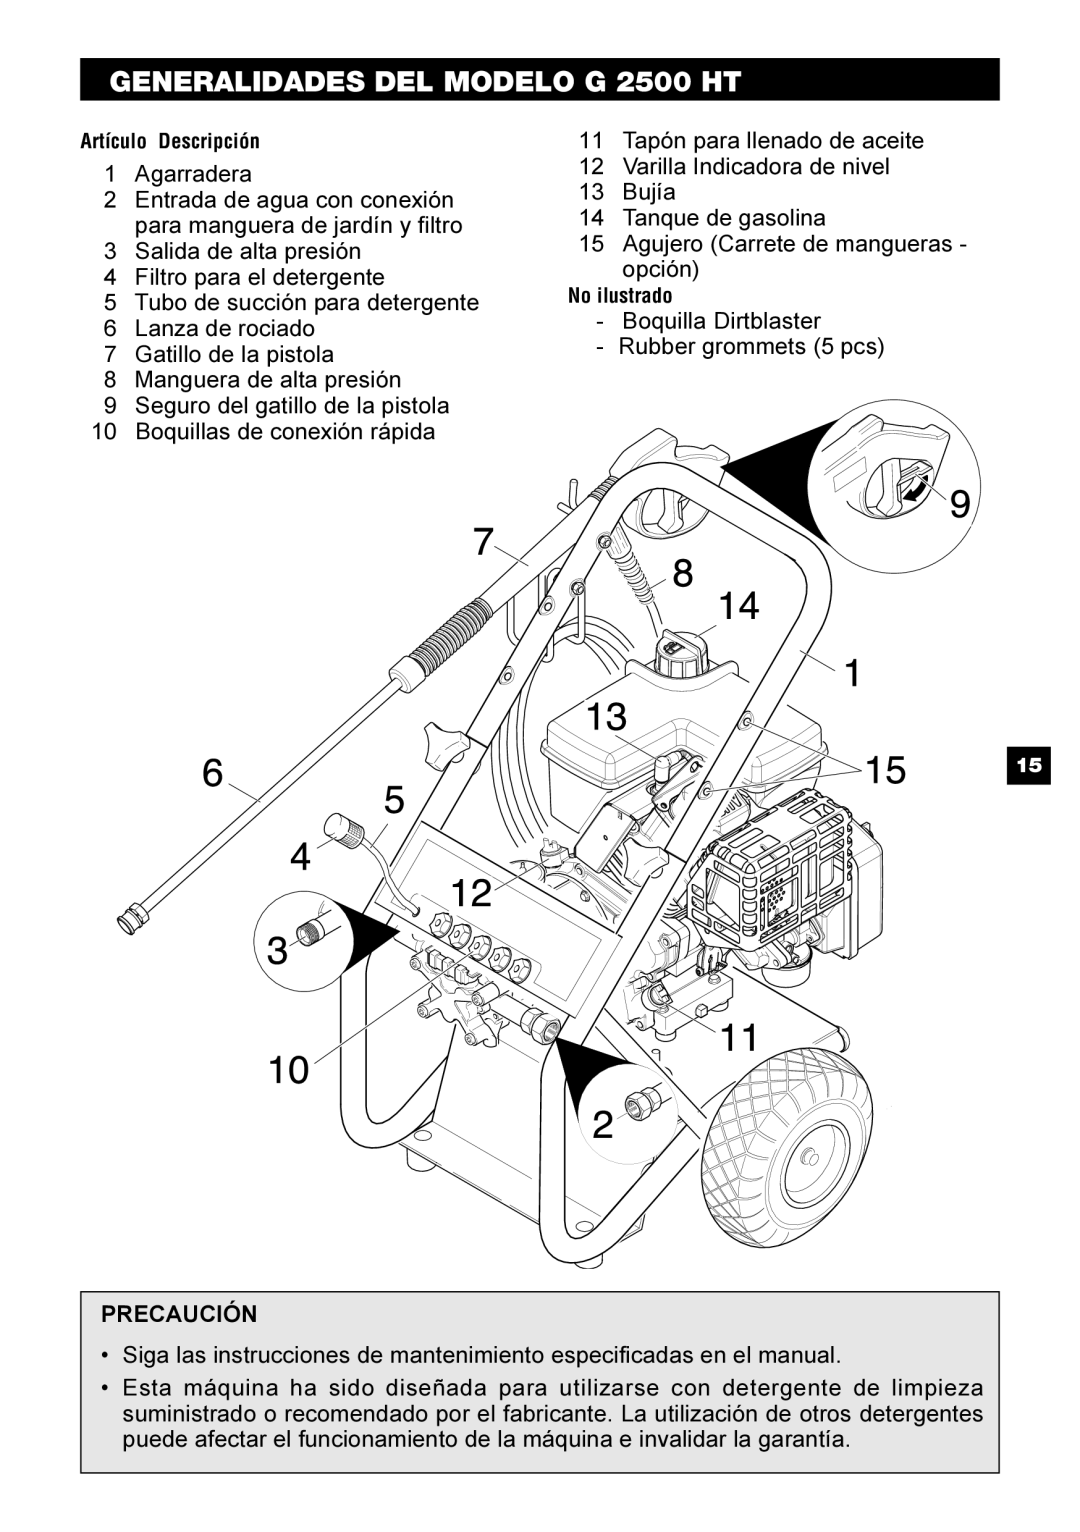 Karcher manual GENERALIDADES DEL MODELO G 2500 HT, Artículo Descripción, No ilustrado 